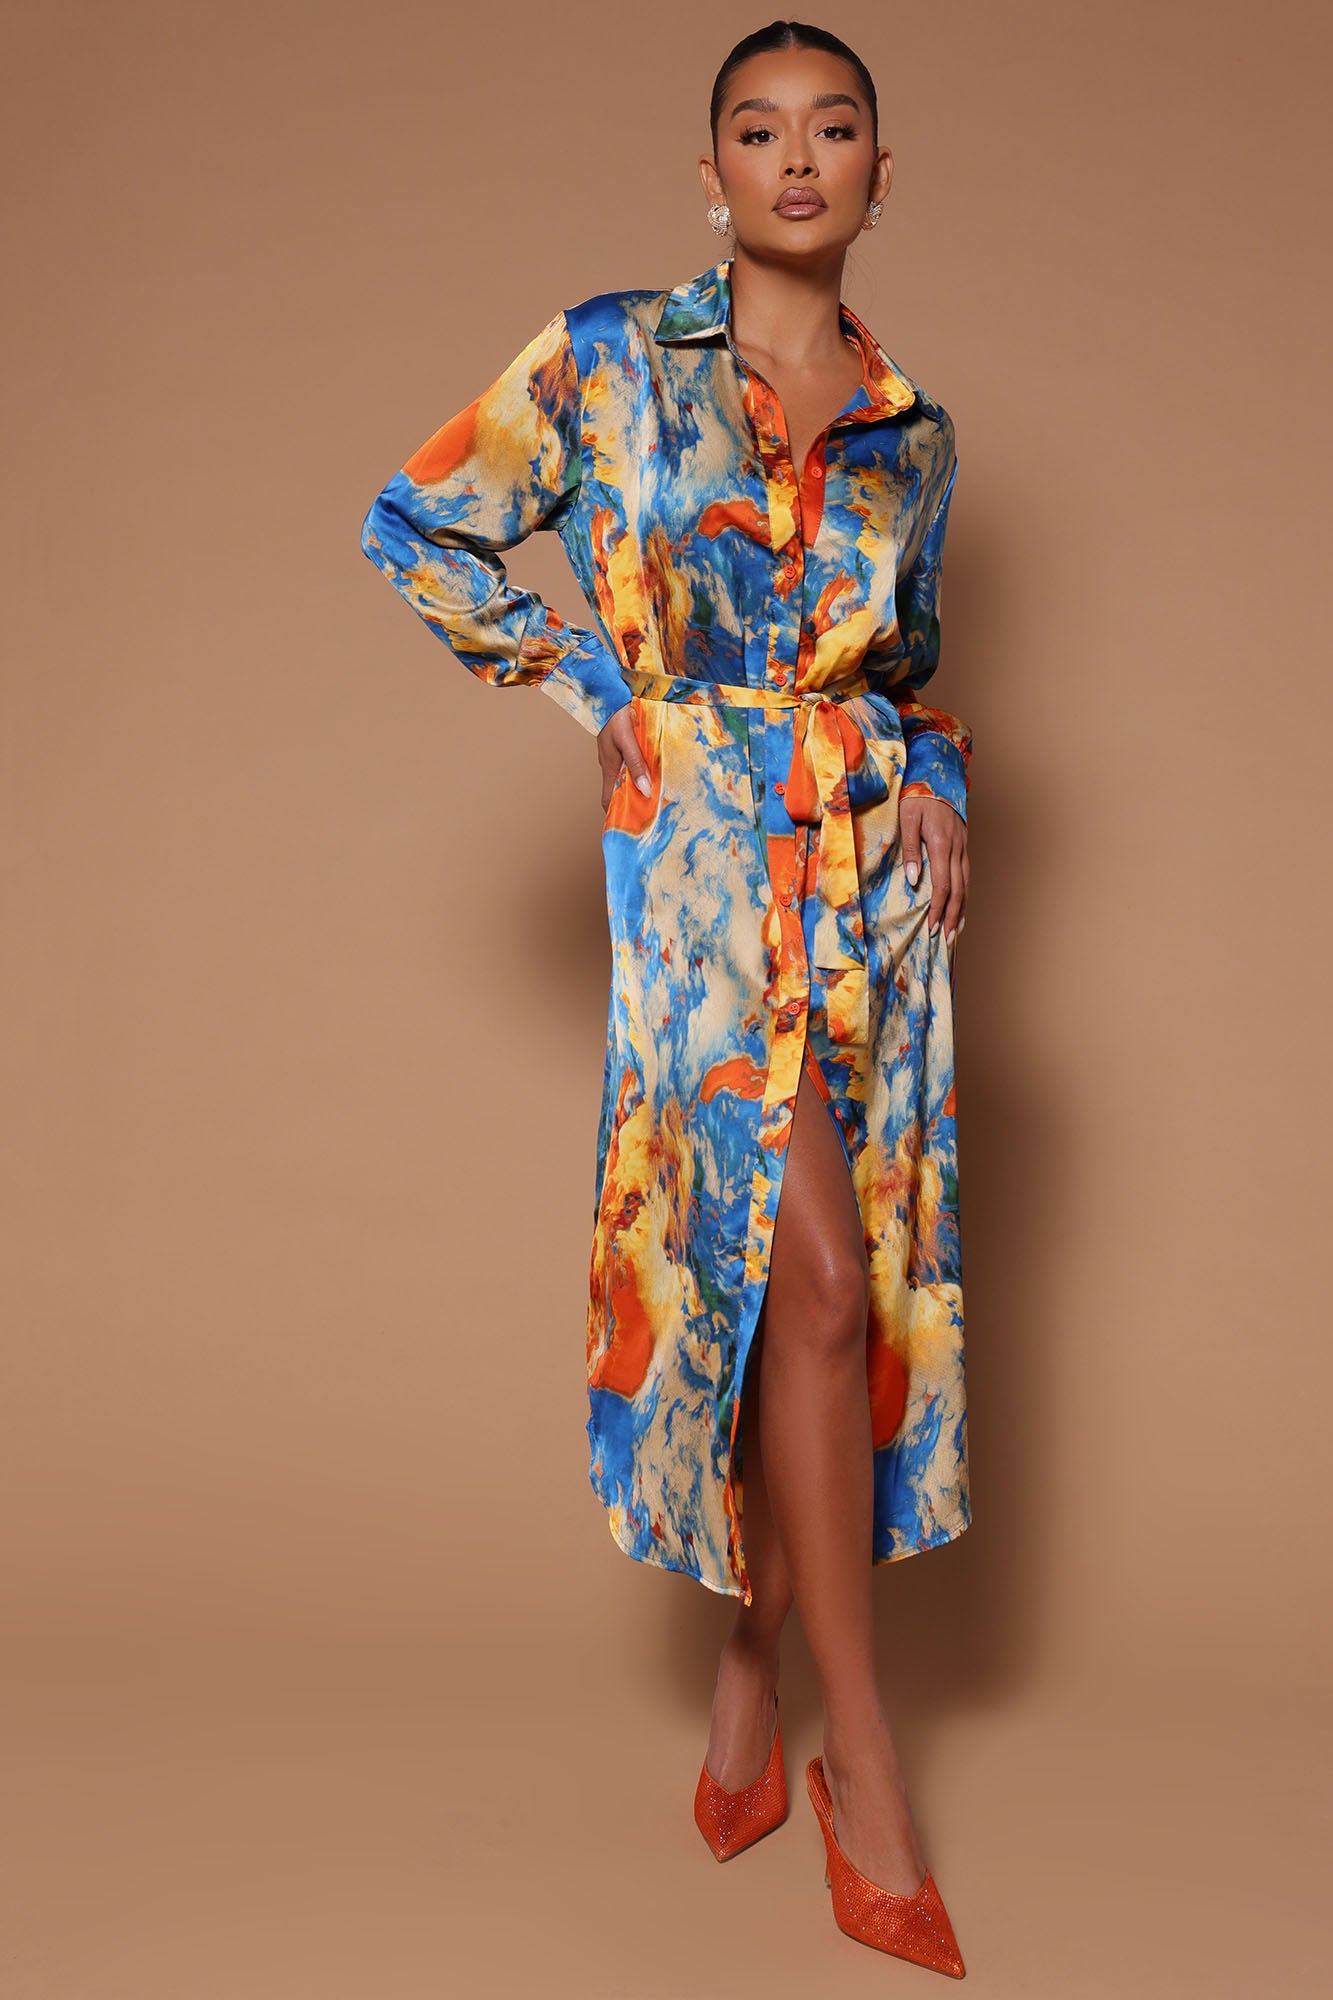 Lara Satin Dress - Royal, Fashion Nova, Dresses